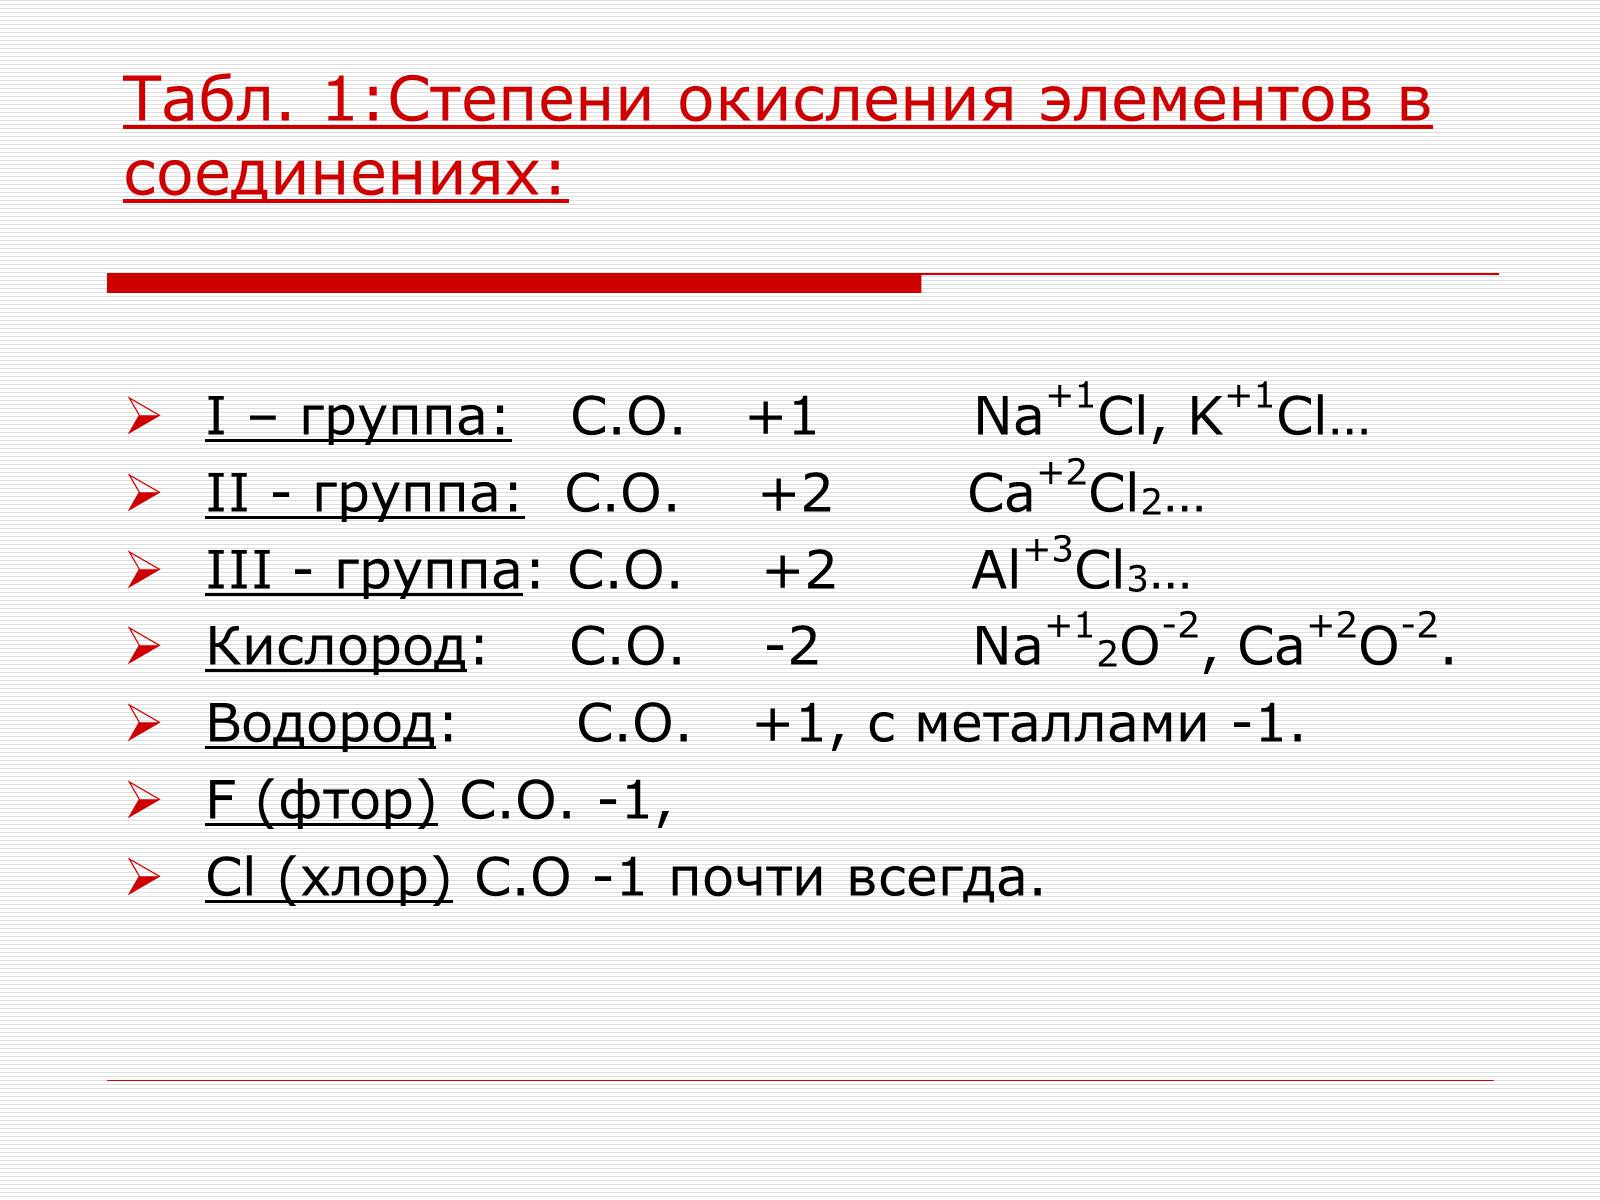 Как определить степень окисления химических элементов в соединениях